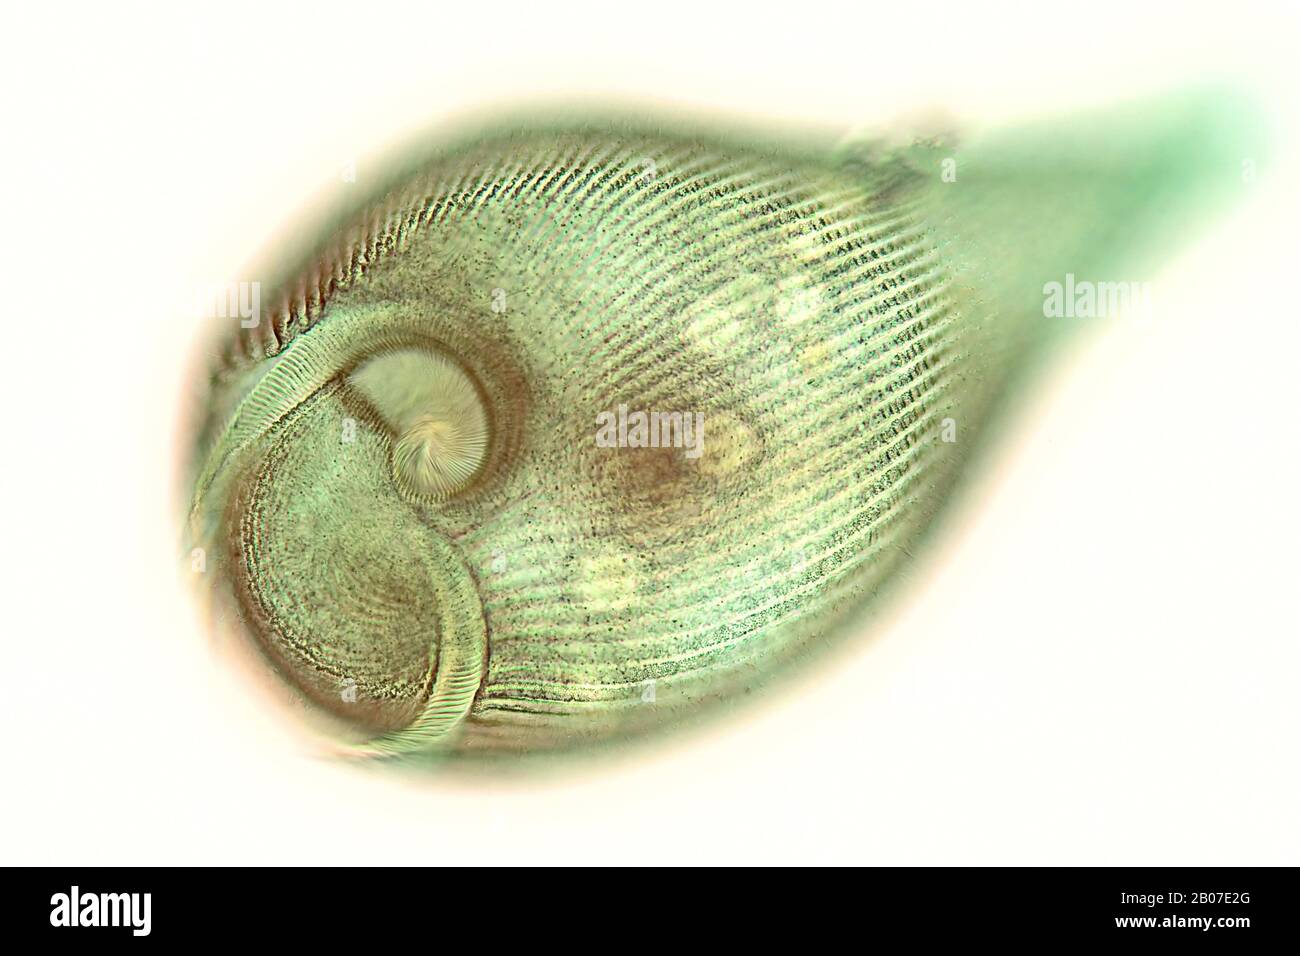 Trompette animalcule (Stentor spec.), Ciliata, photo au microscope léger, Allemagne Banque D'Images